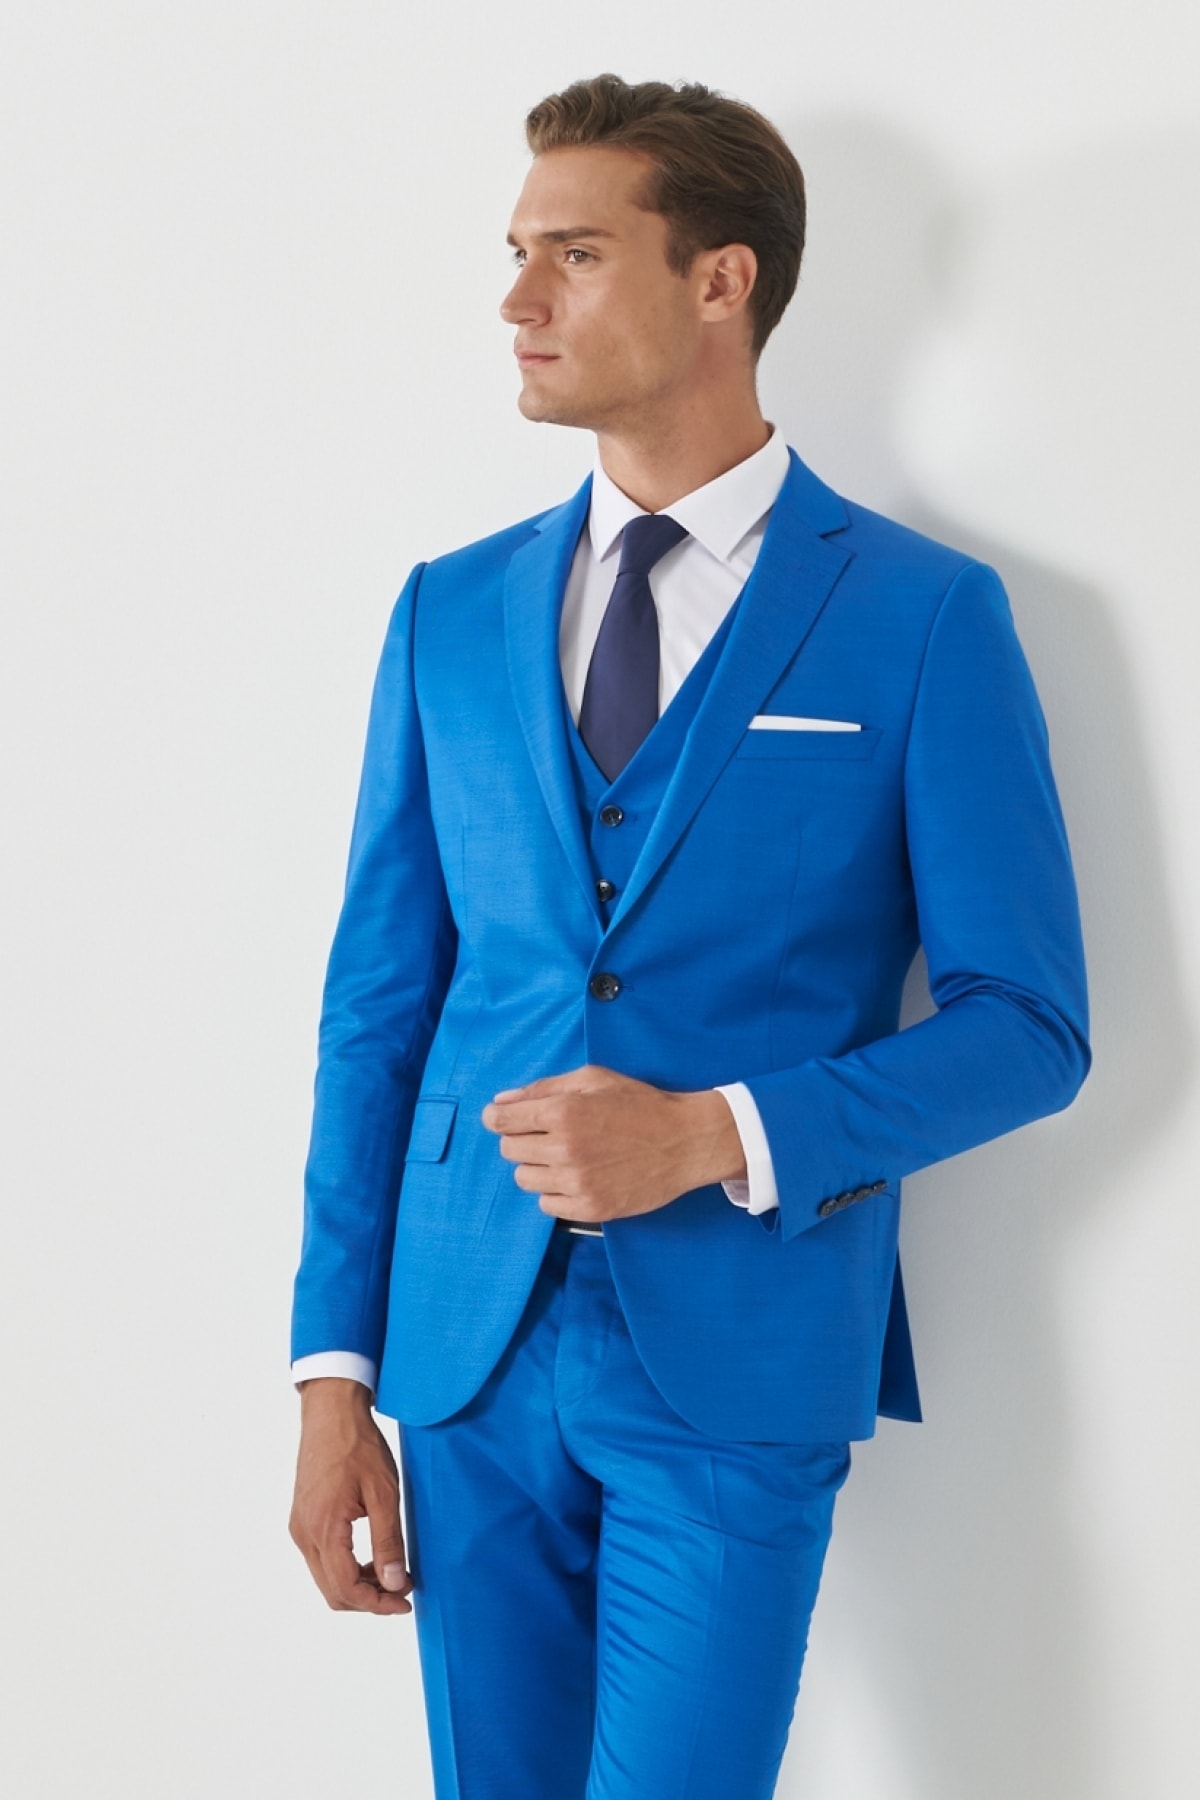 Levně ALTINYILDIZ CLASSICS Men's Sax-Blue Extra Slim Fit Slim Fit Slim Fit Monocollar Pick Patterned Vest Suit.